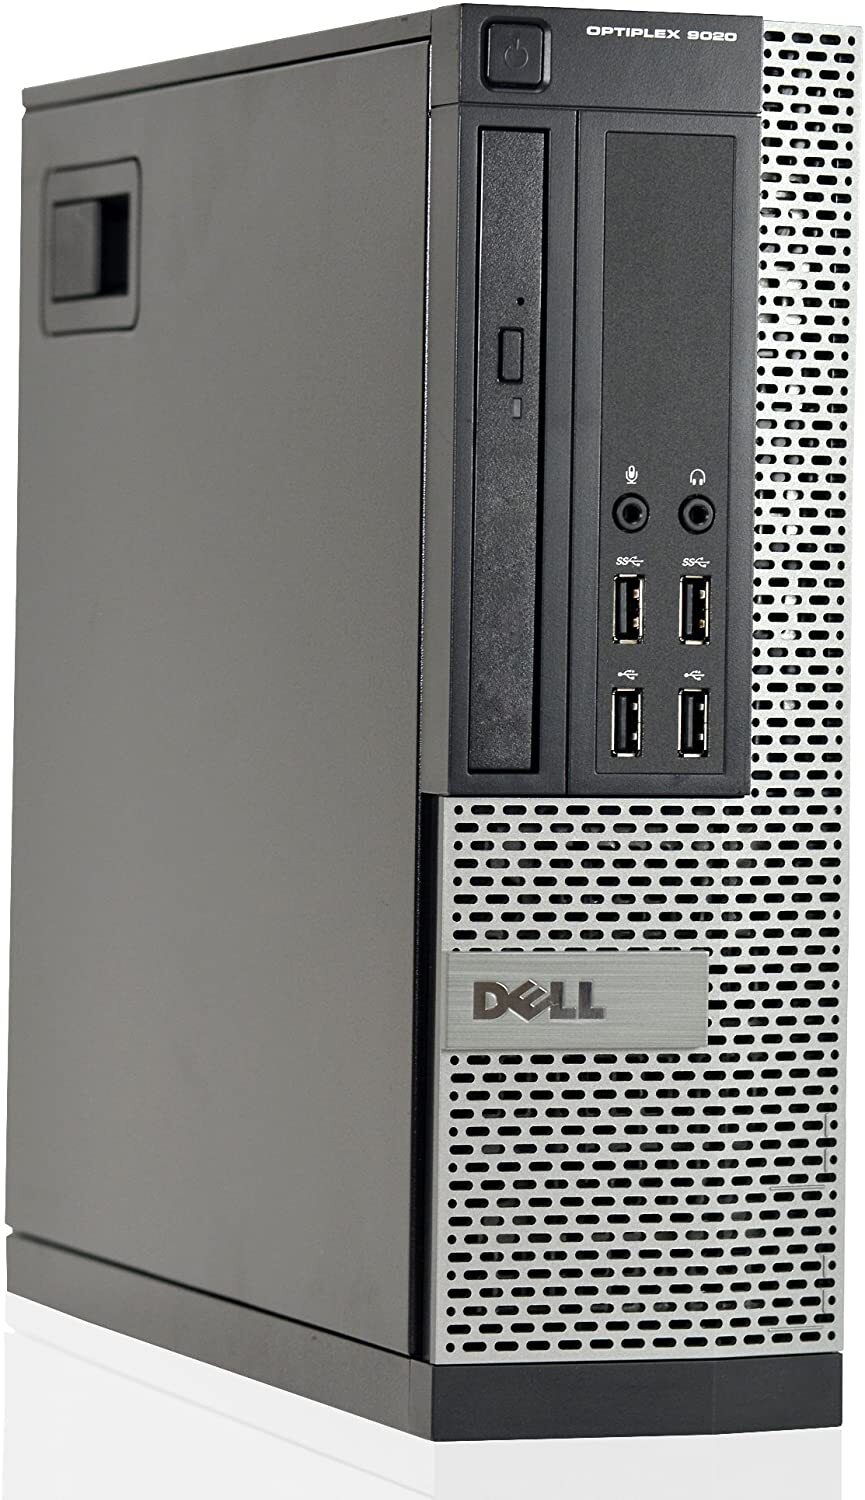 Dell OptiPlex 9020 SFF Intel i5 4590 3.00GHz 4GB RAM 320GB HDD NO OS